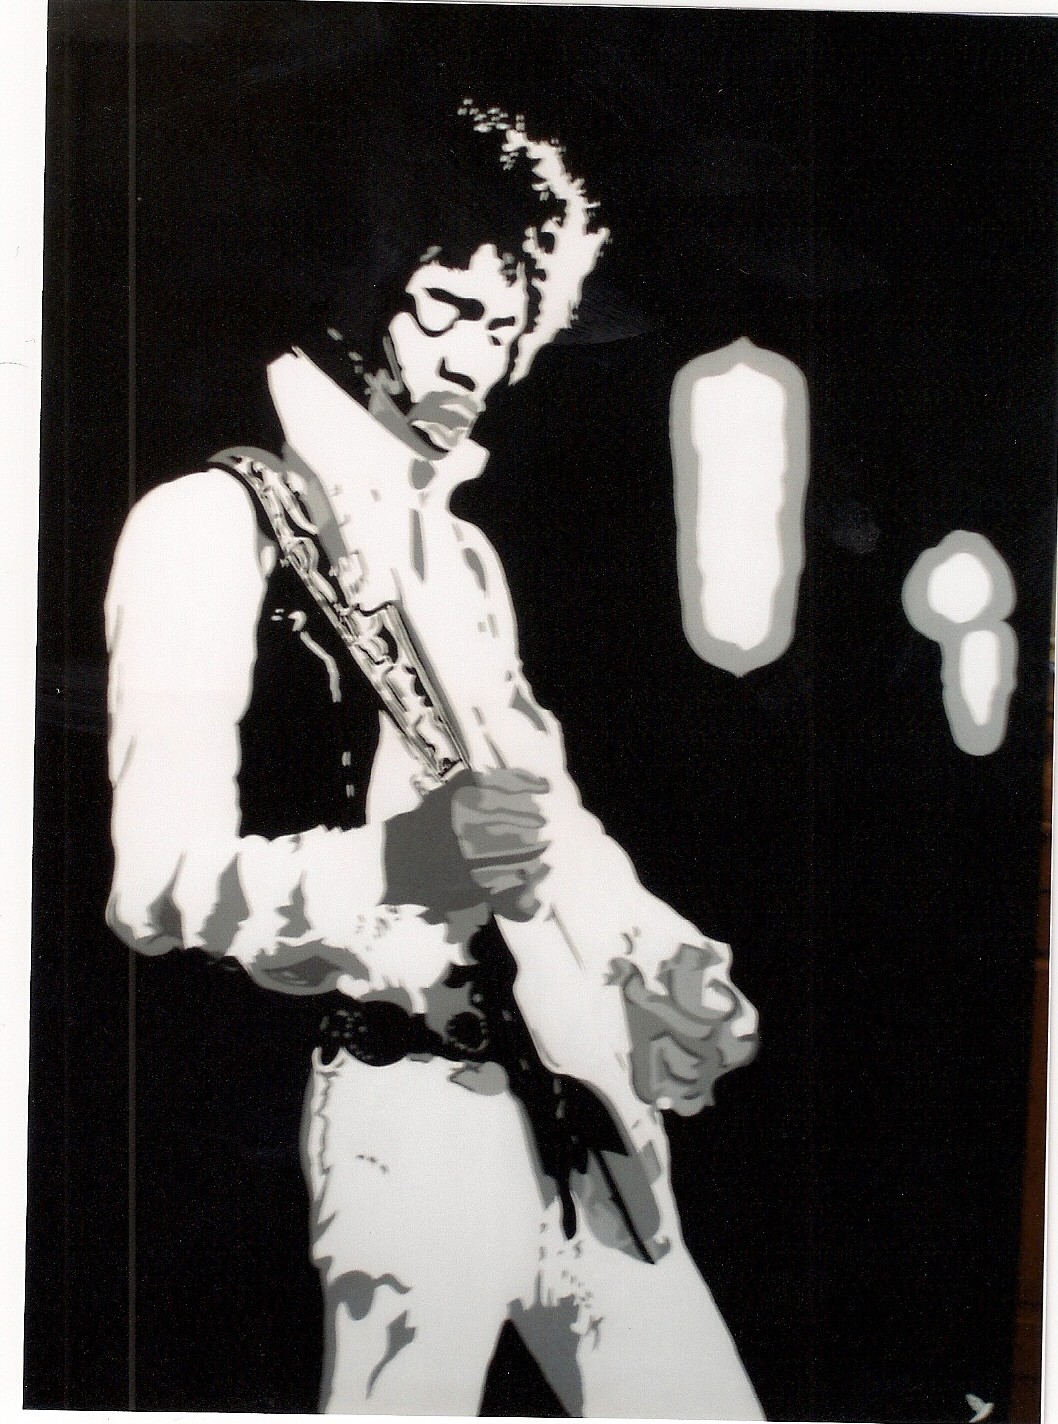 Show man " Jimi Hendrix "